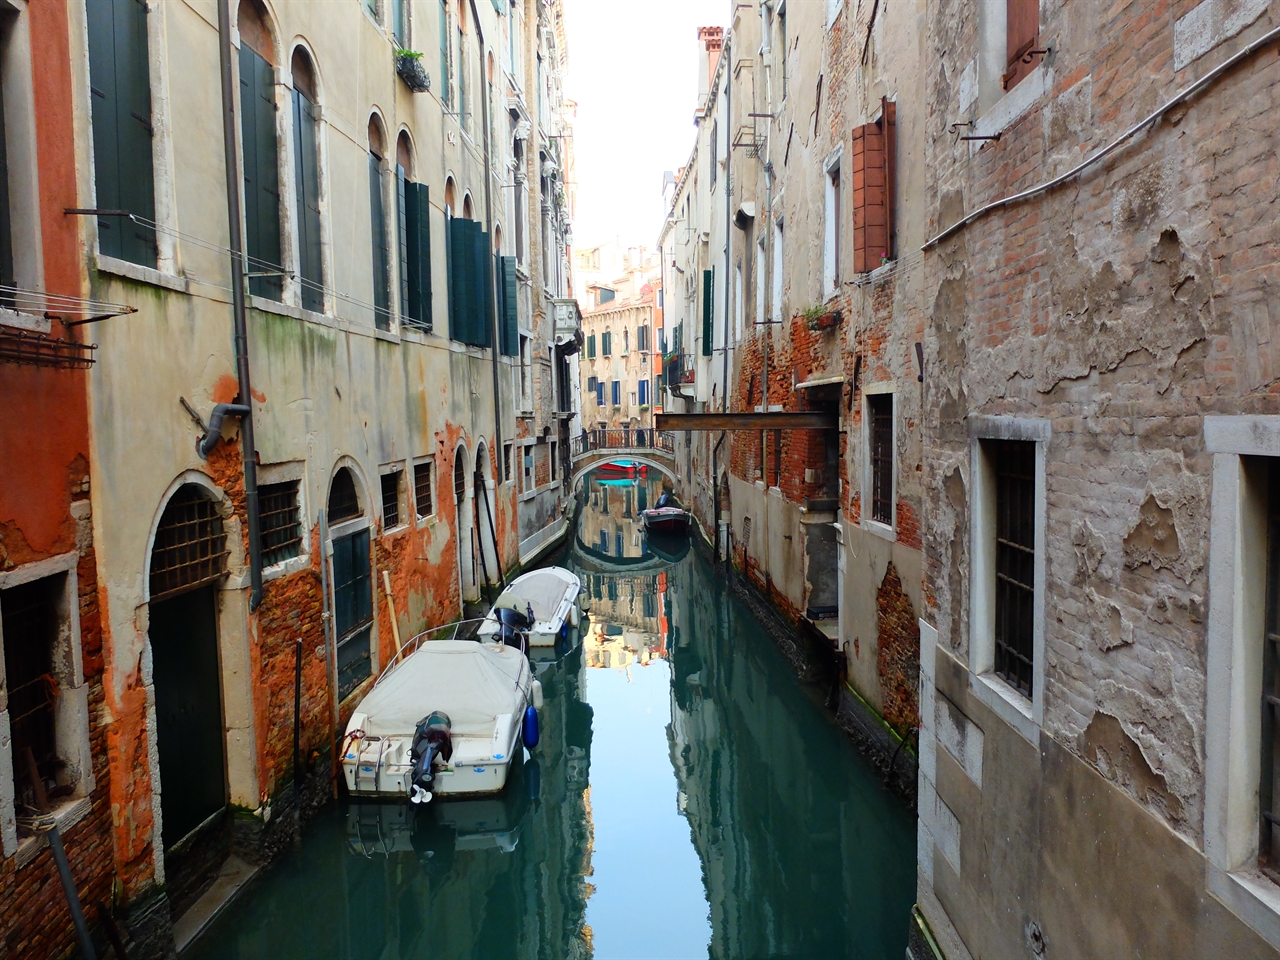 골목 구석구석까지 이어져 있는 작은 운하들을 건널 때마다 생전 처음 보는 풍경이 자꾸 발걸음을 멈추게 하는 곳. 여기는 베네치아 입니다. 